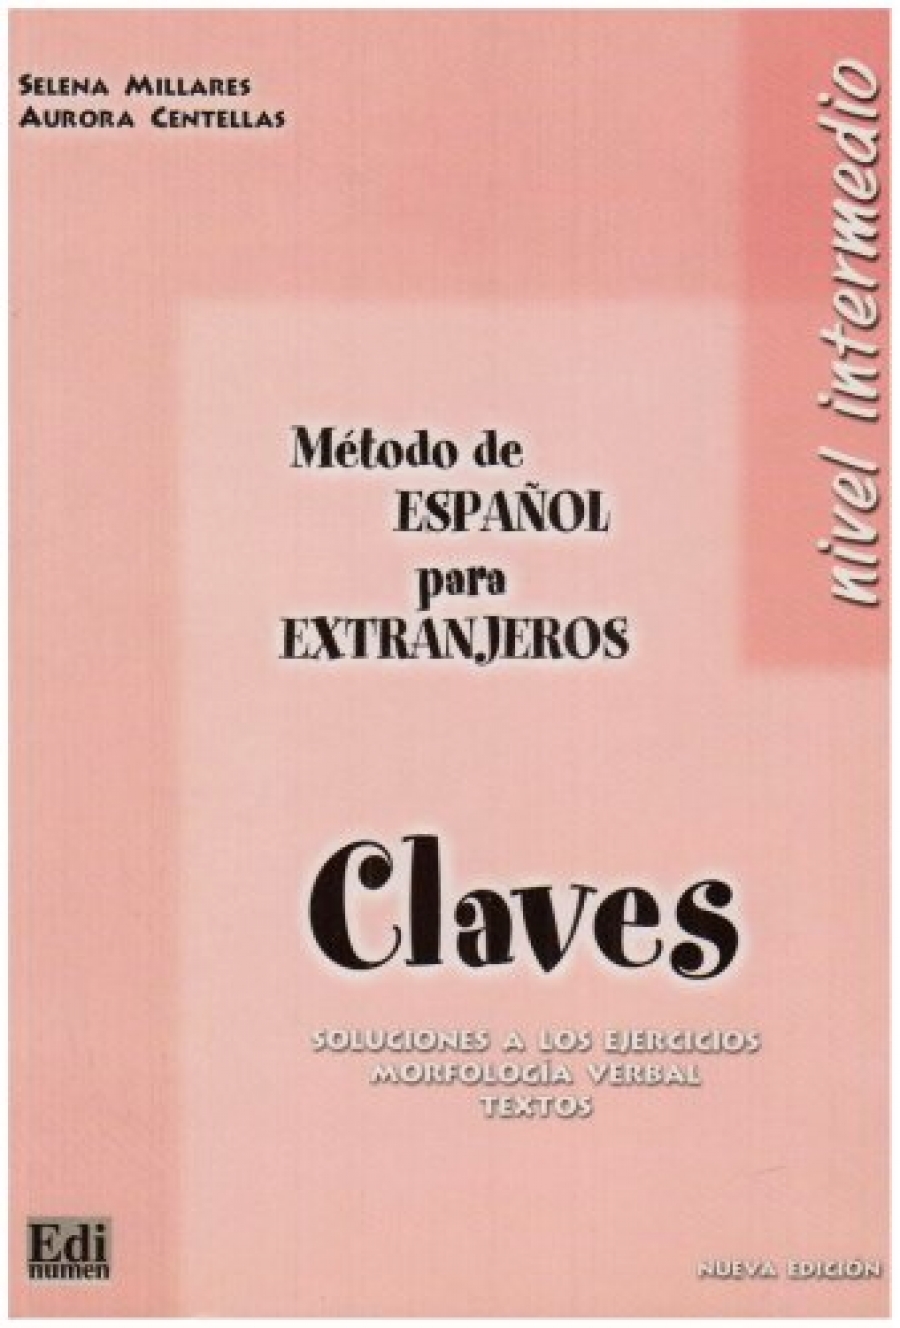 Método de español para extranjeros. Nivel Intermedio. Libro De Claves 